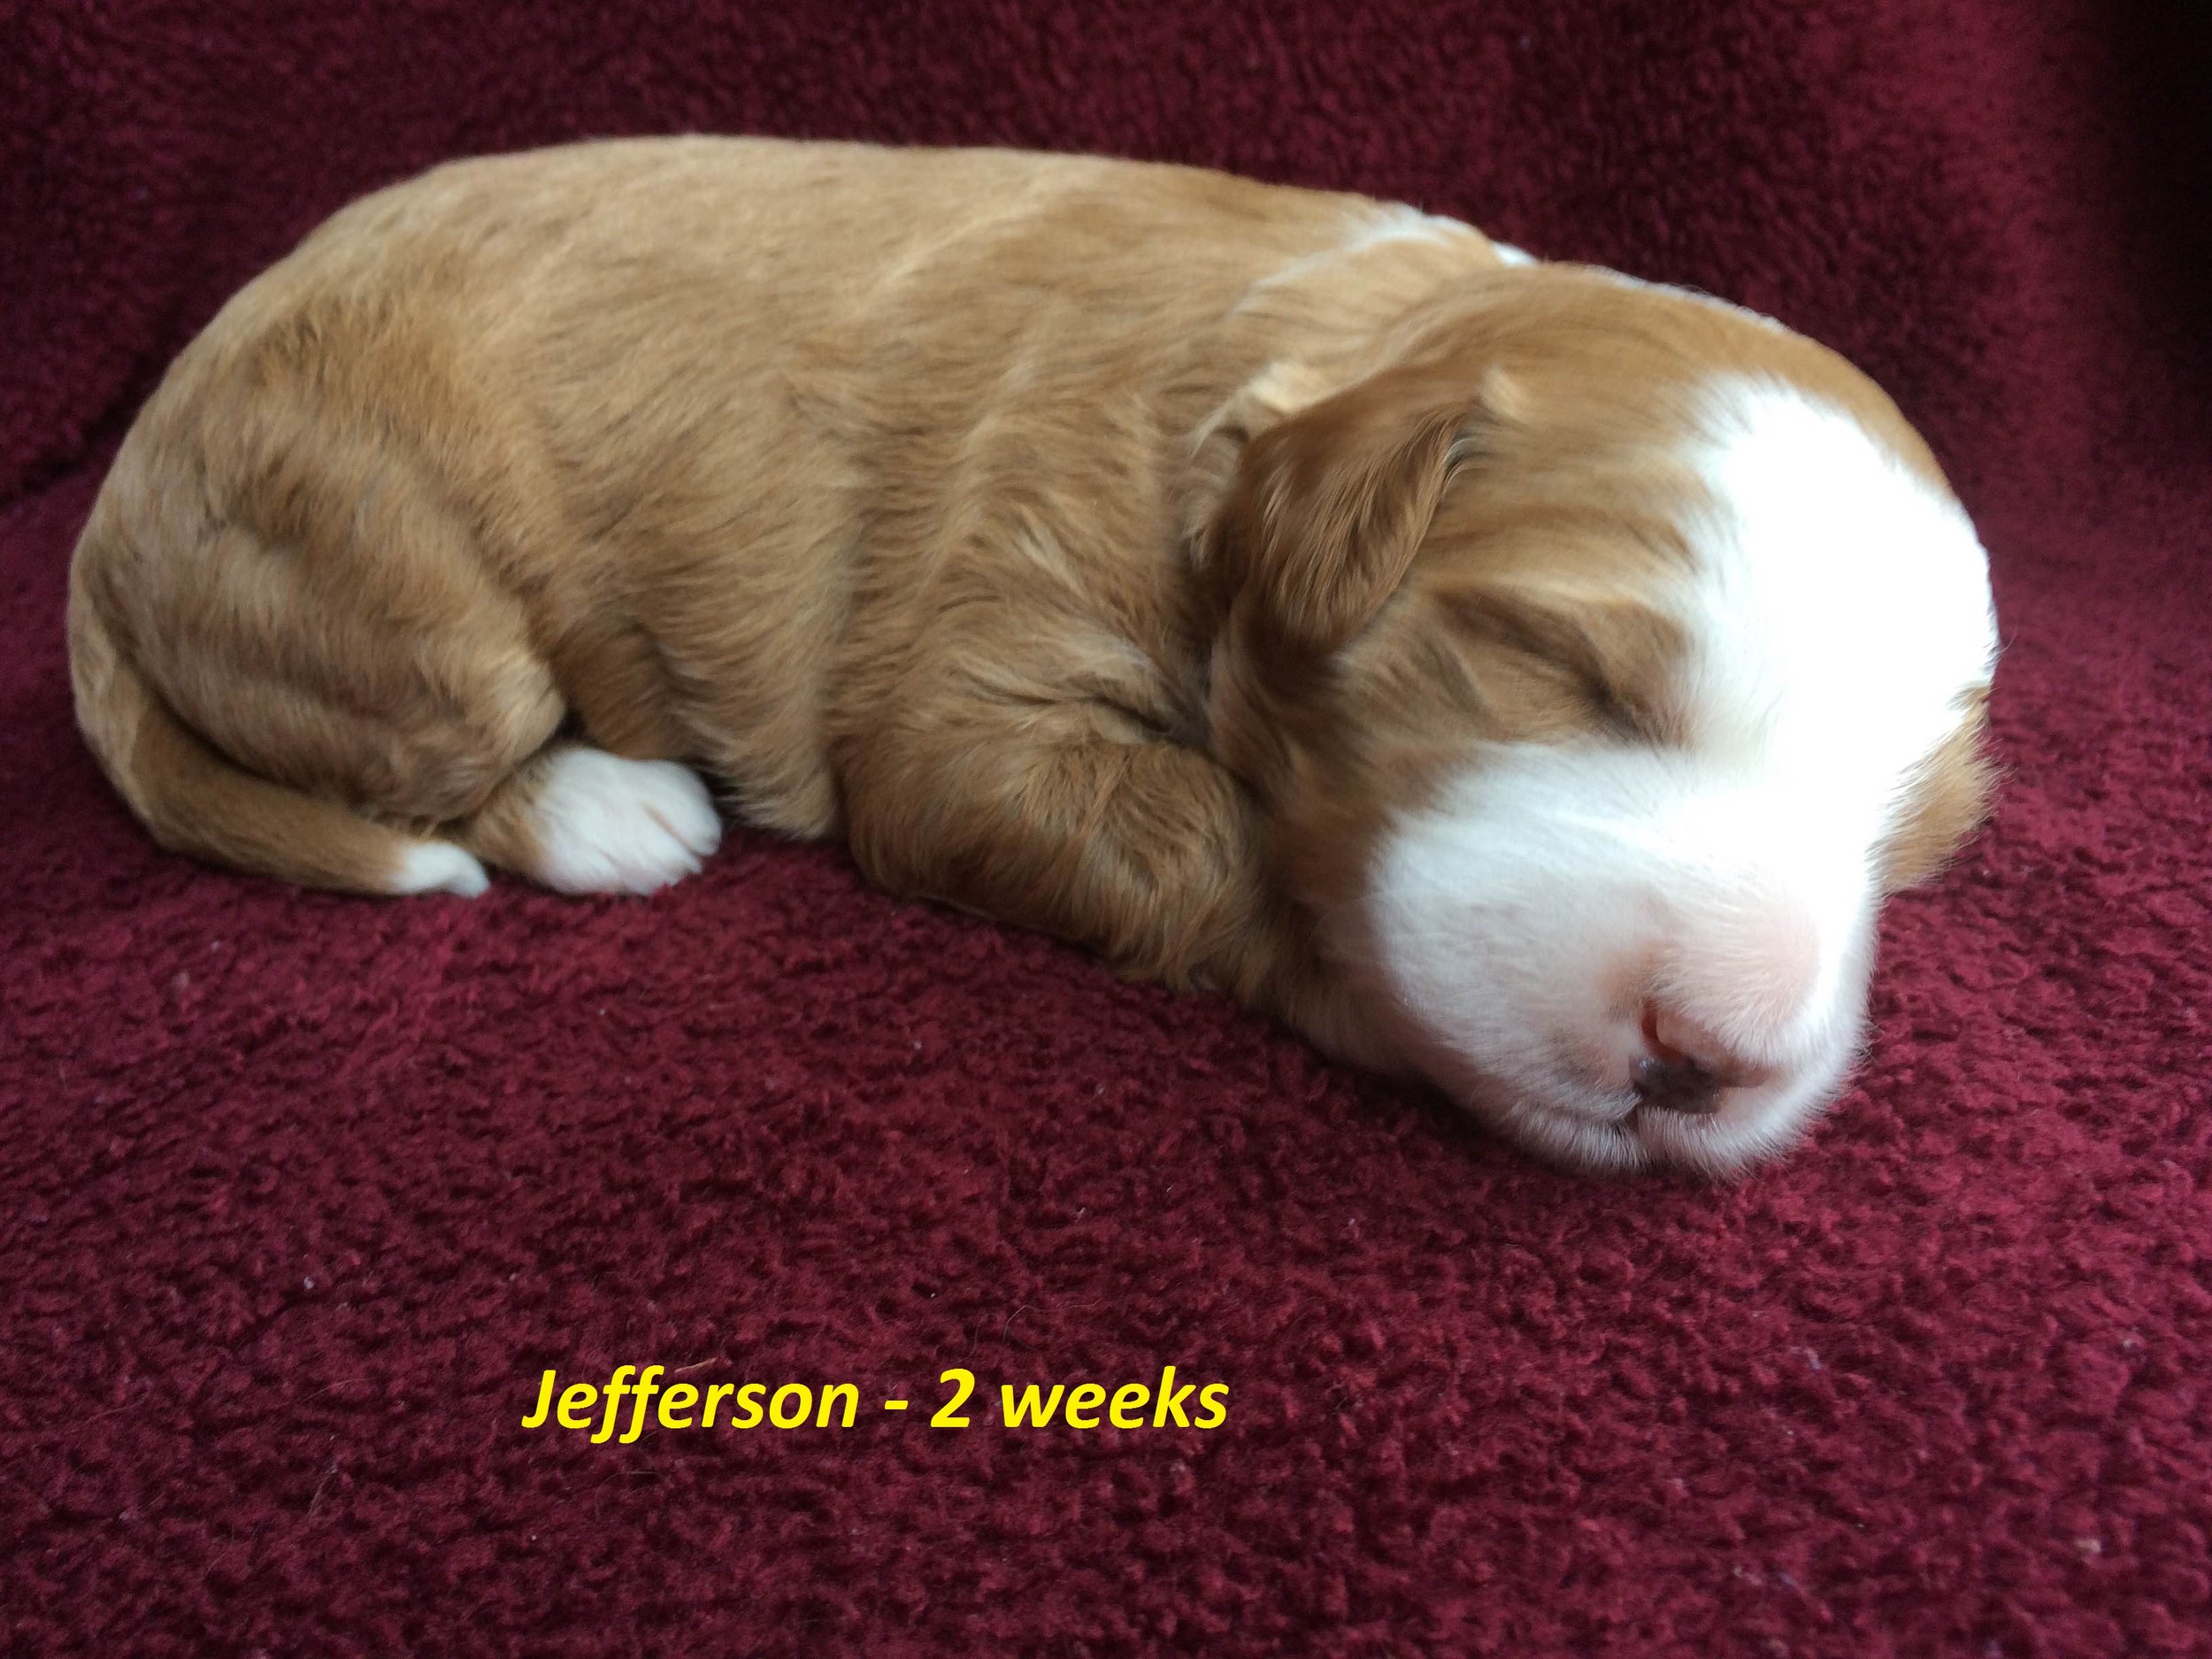 Jefferson - 2 weeks up.jpg